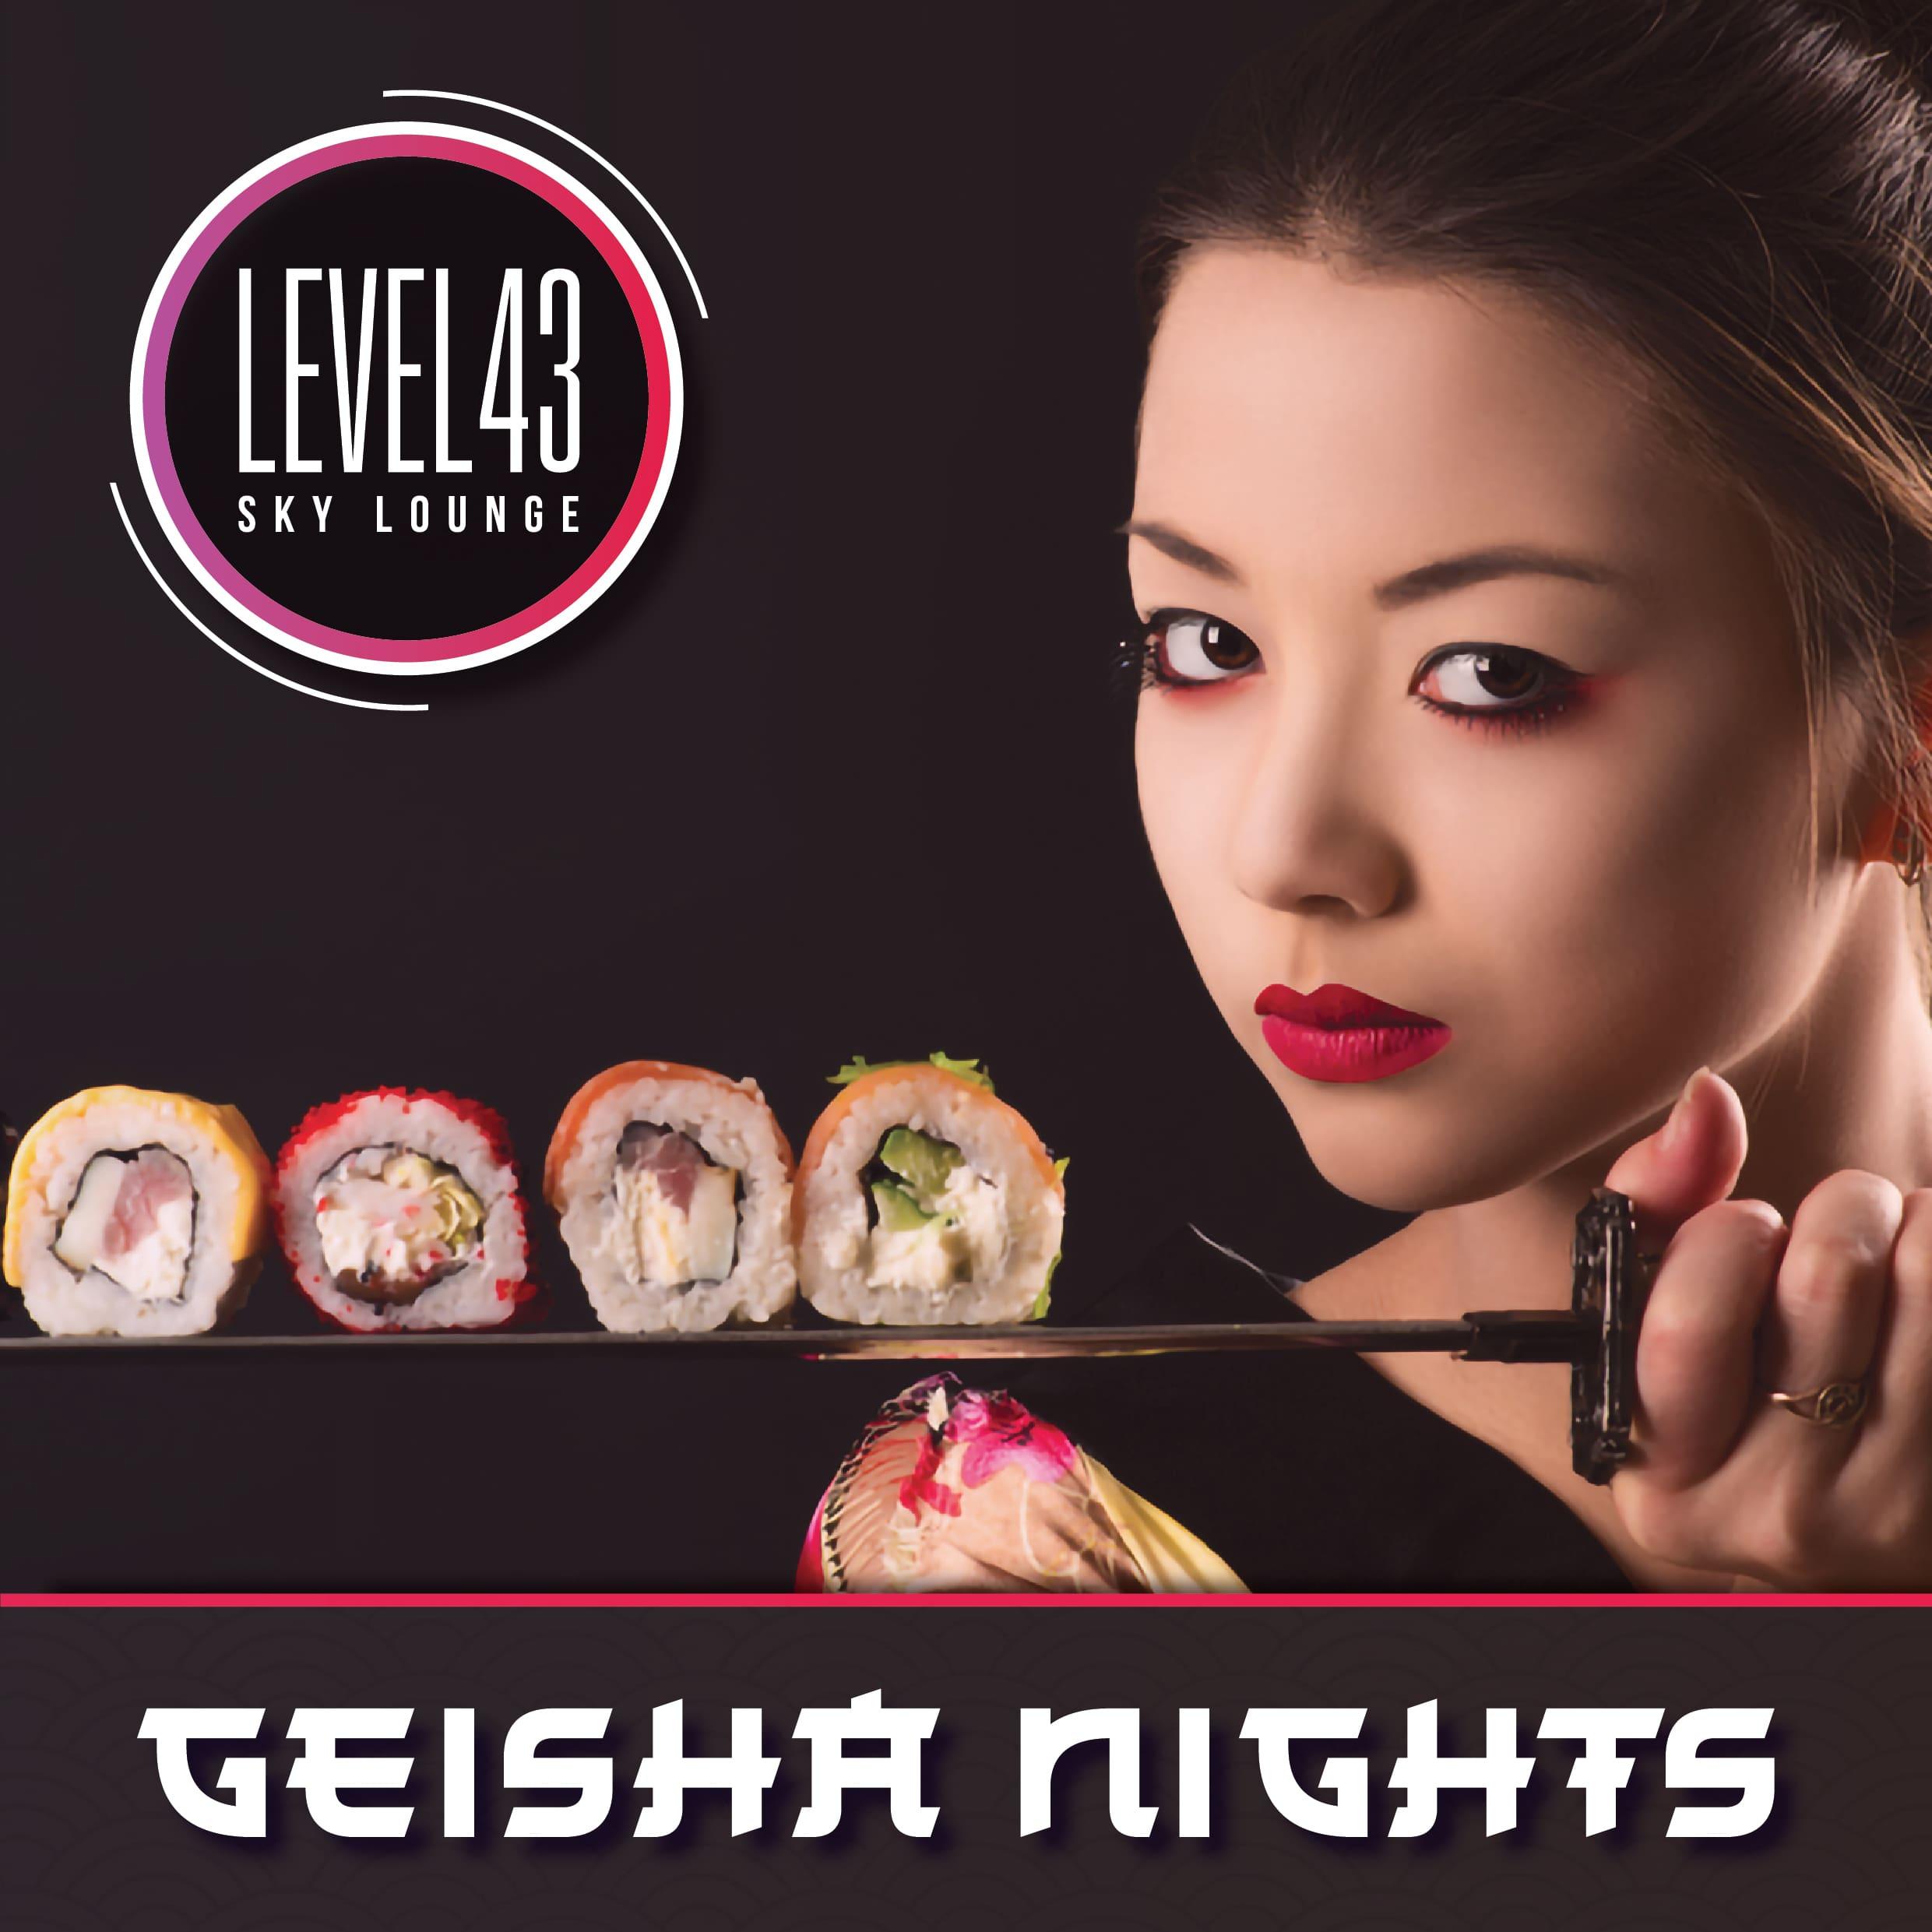 Geisha Nights